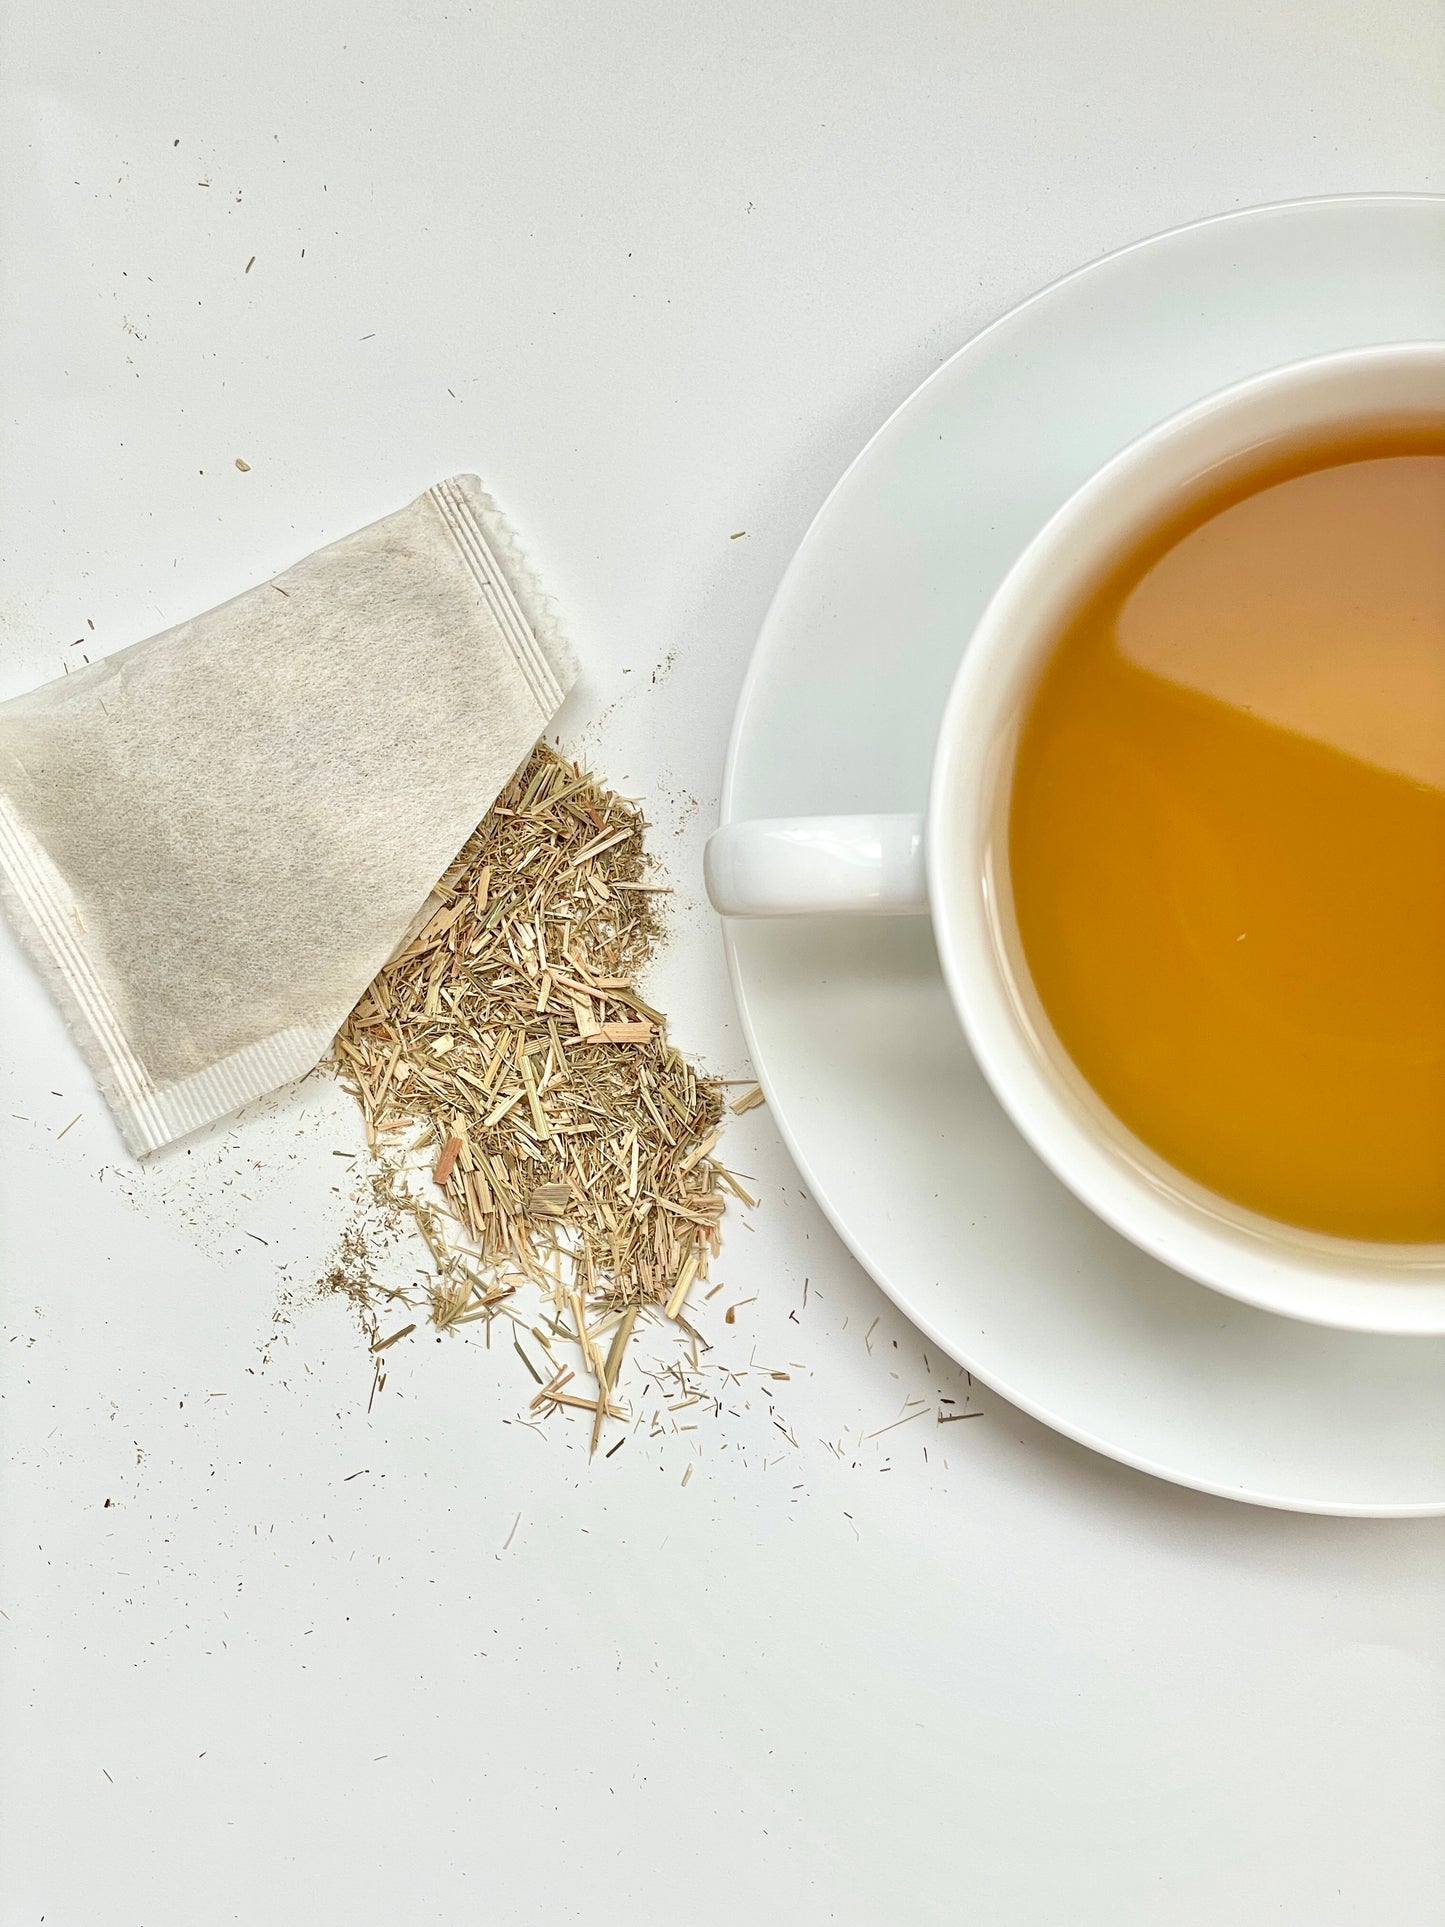 Lavender Lemongrass Tea